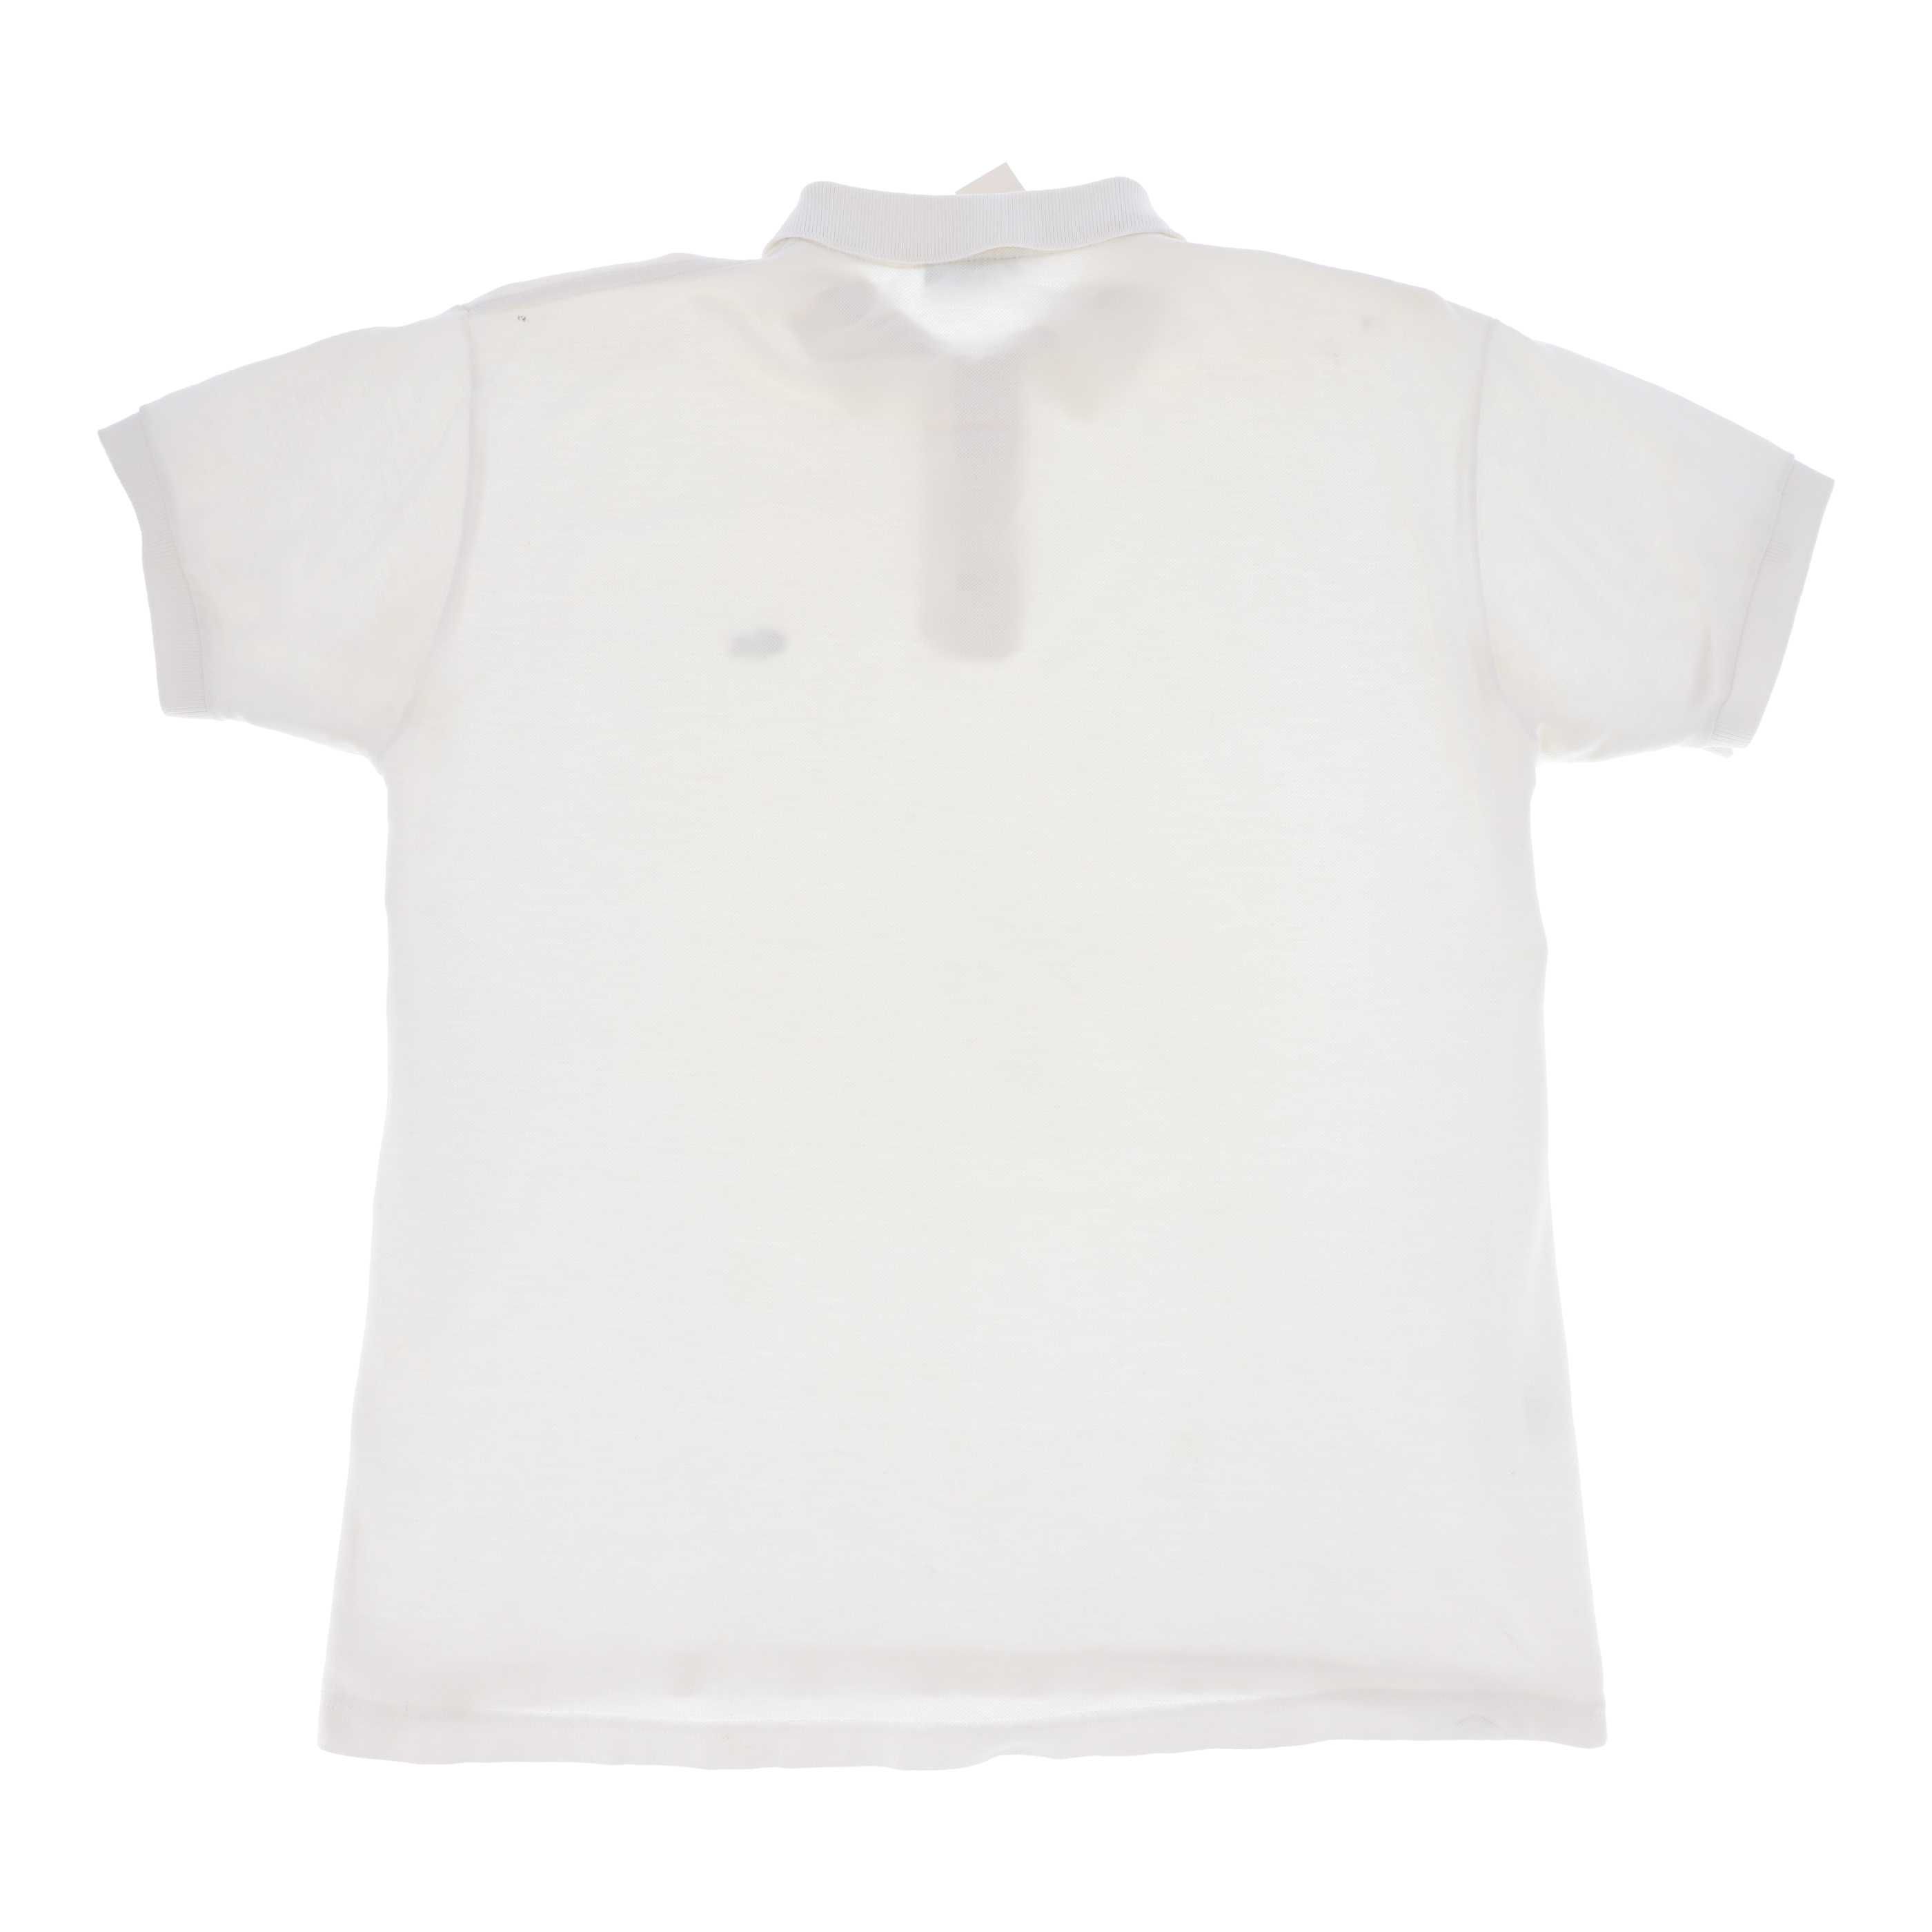 Biała koszulka polo marki Lacoste, rozmiar 42 - używana